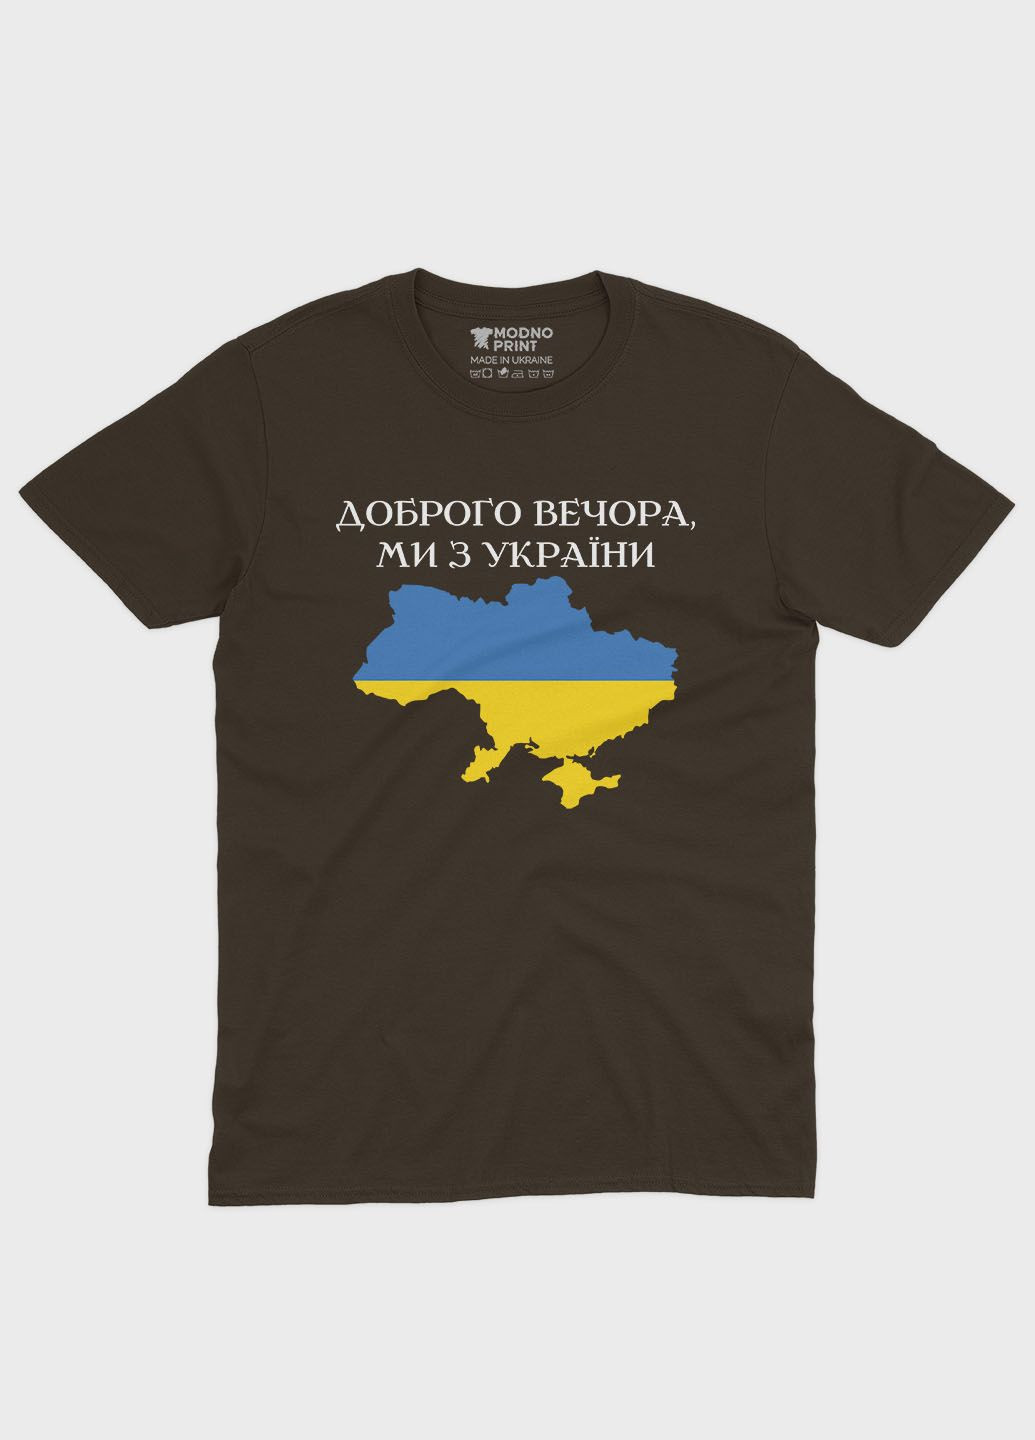 Коричневая мужская футболка с патриотическим принтом добрый вечер (ts001-2-dch-005-1-048) Modno